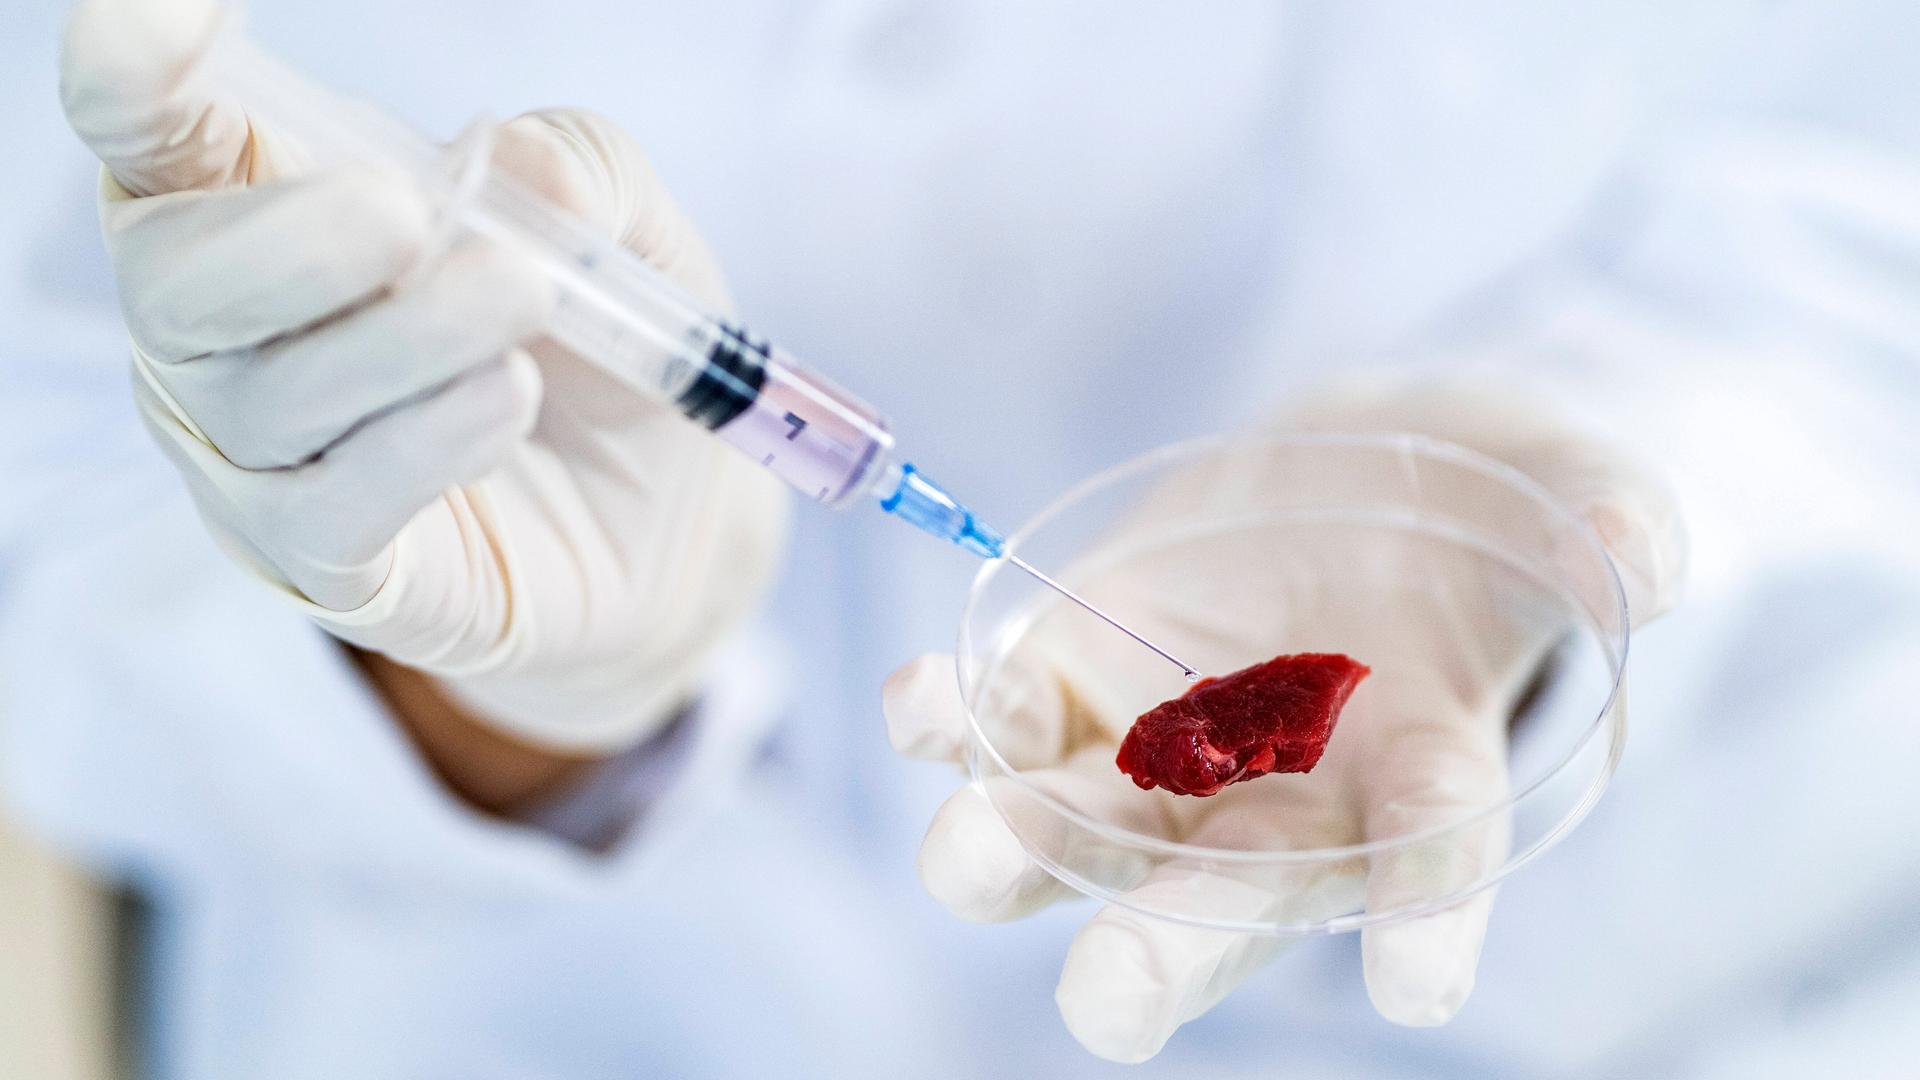 Symbolfoto: Ein Forscher injiziert mit einer Spritze künstliches Fleisch in einer Petrischale.